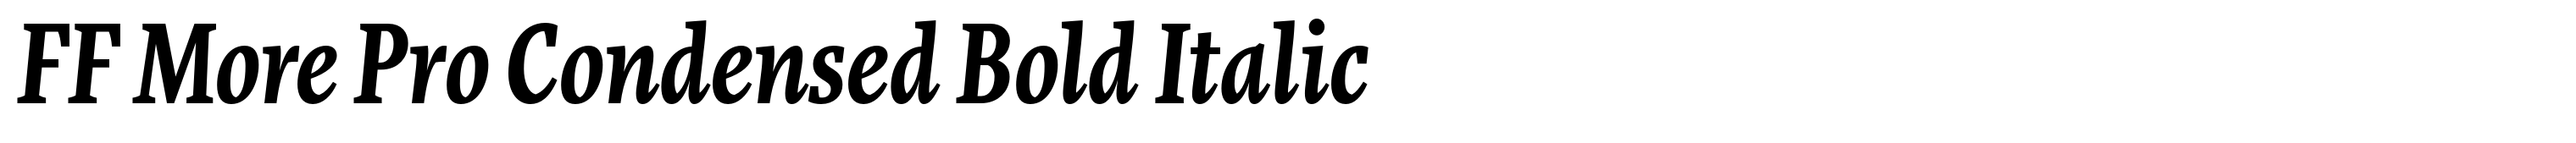 FF More Pro Condensed Bold Italic